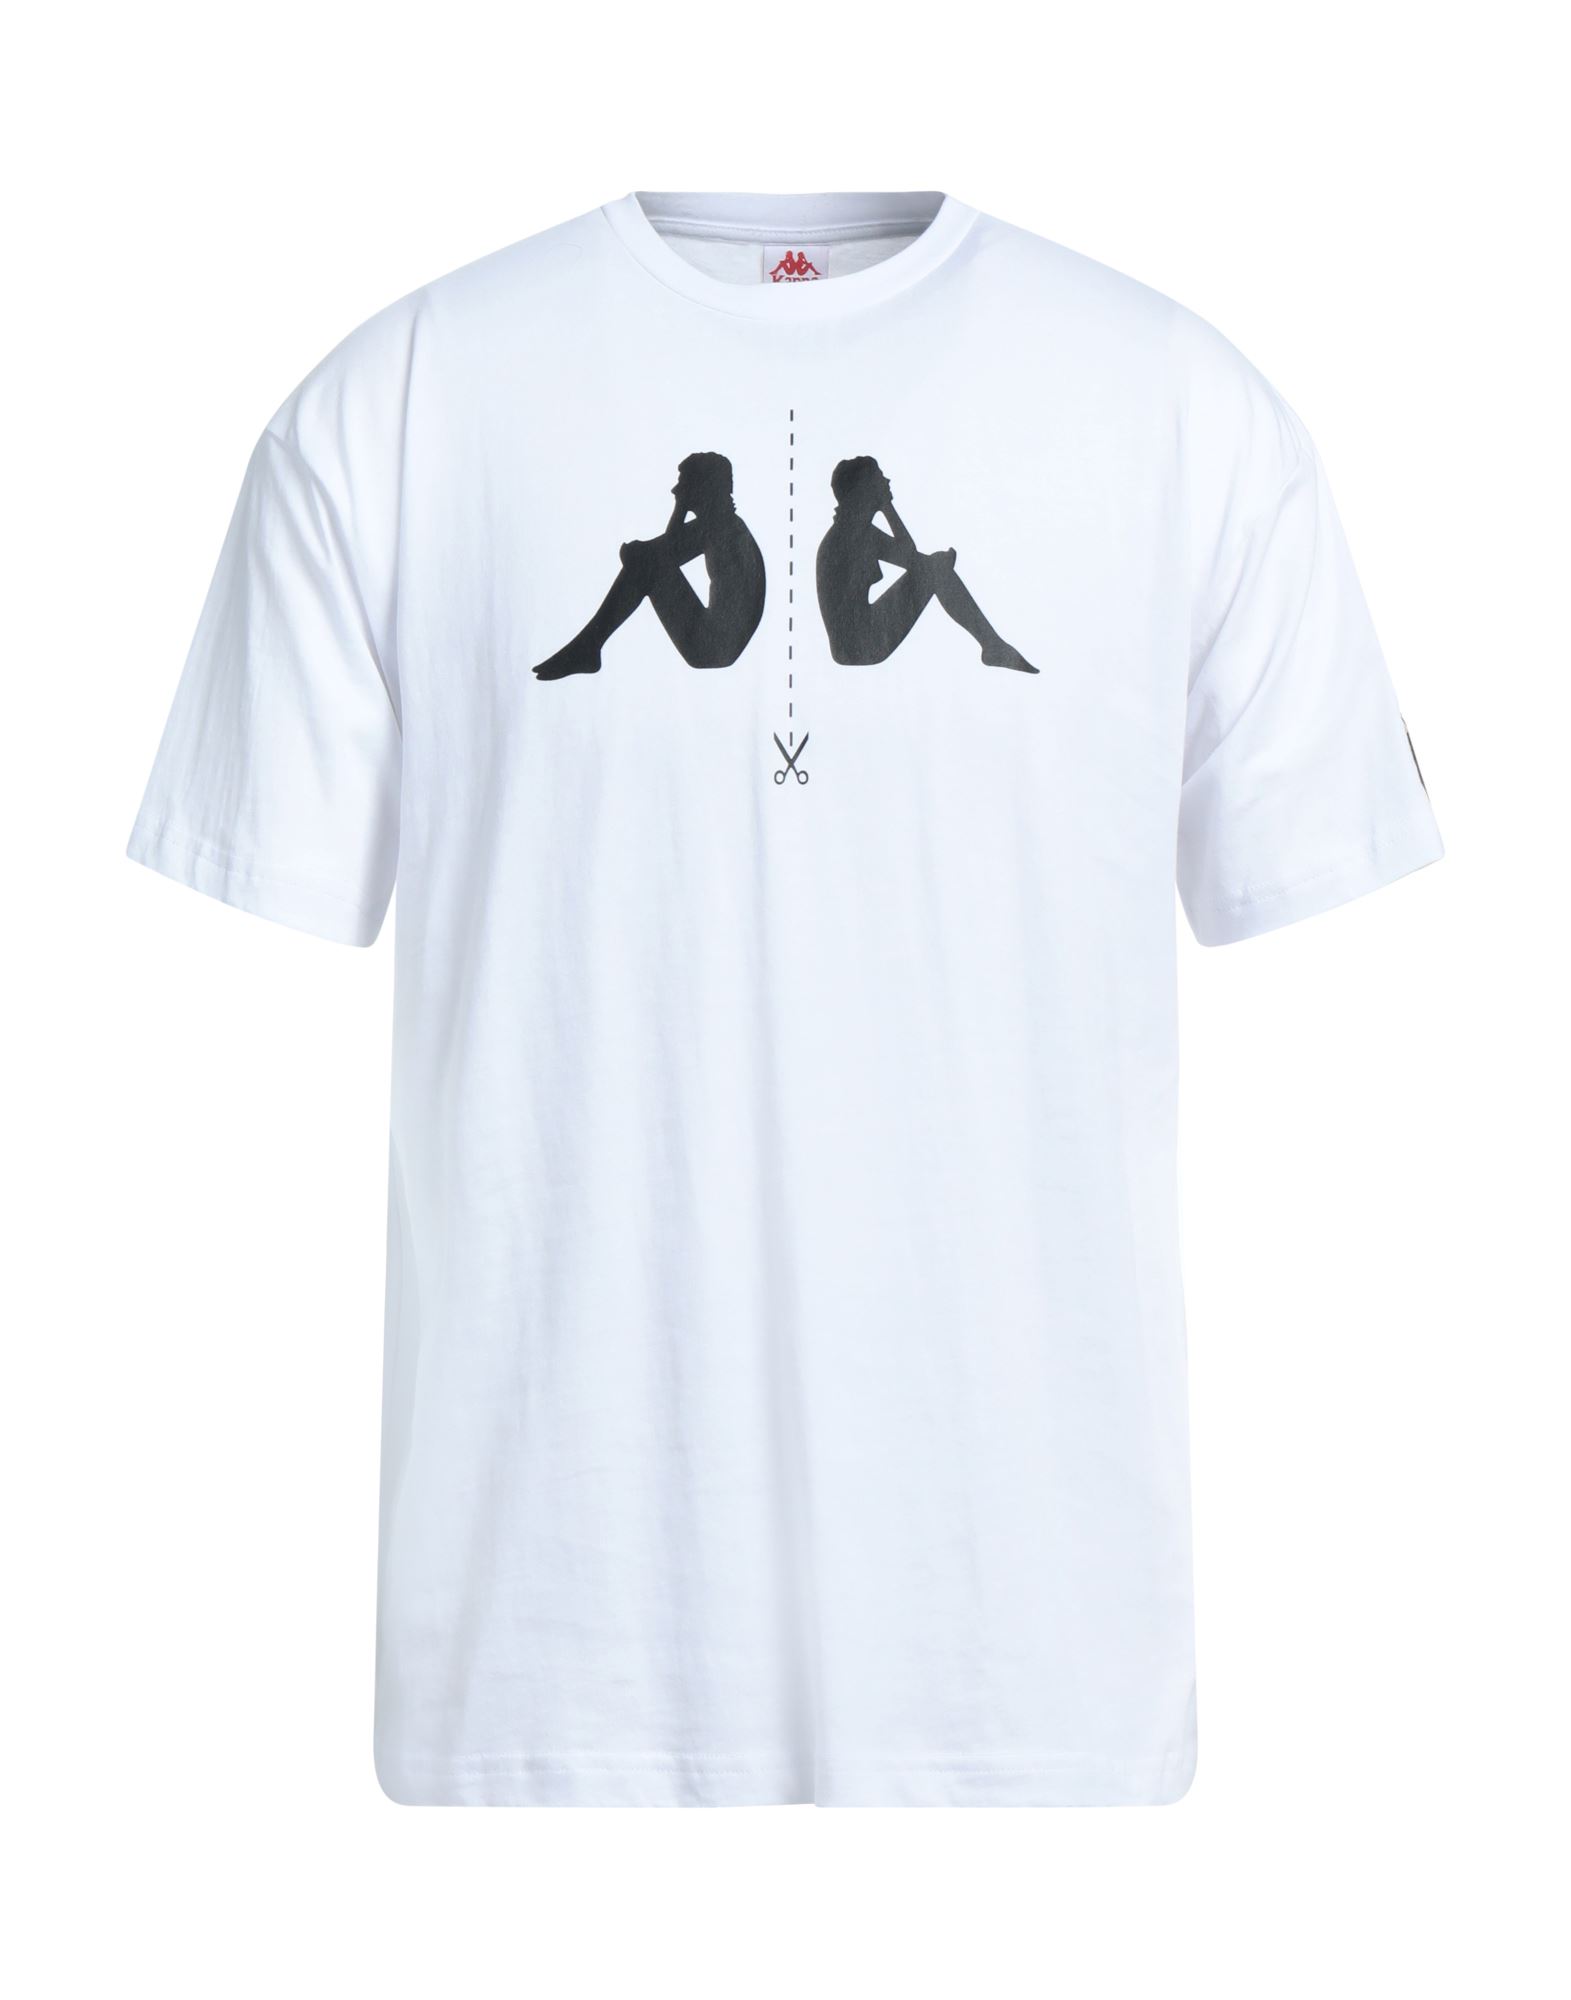 KAPPA T-shirts Herren Weiß von KAPPA